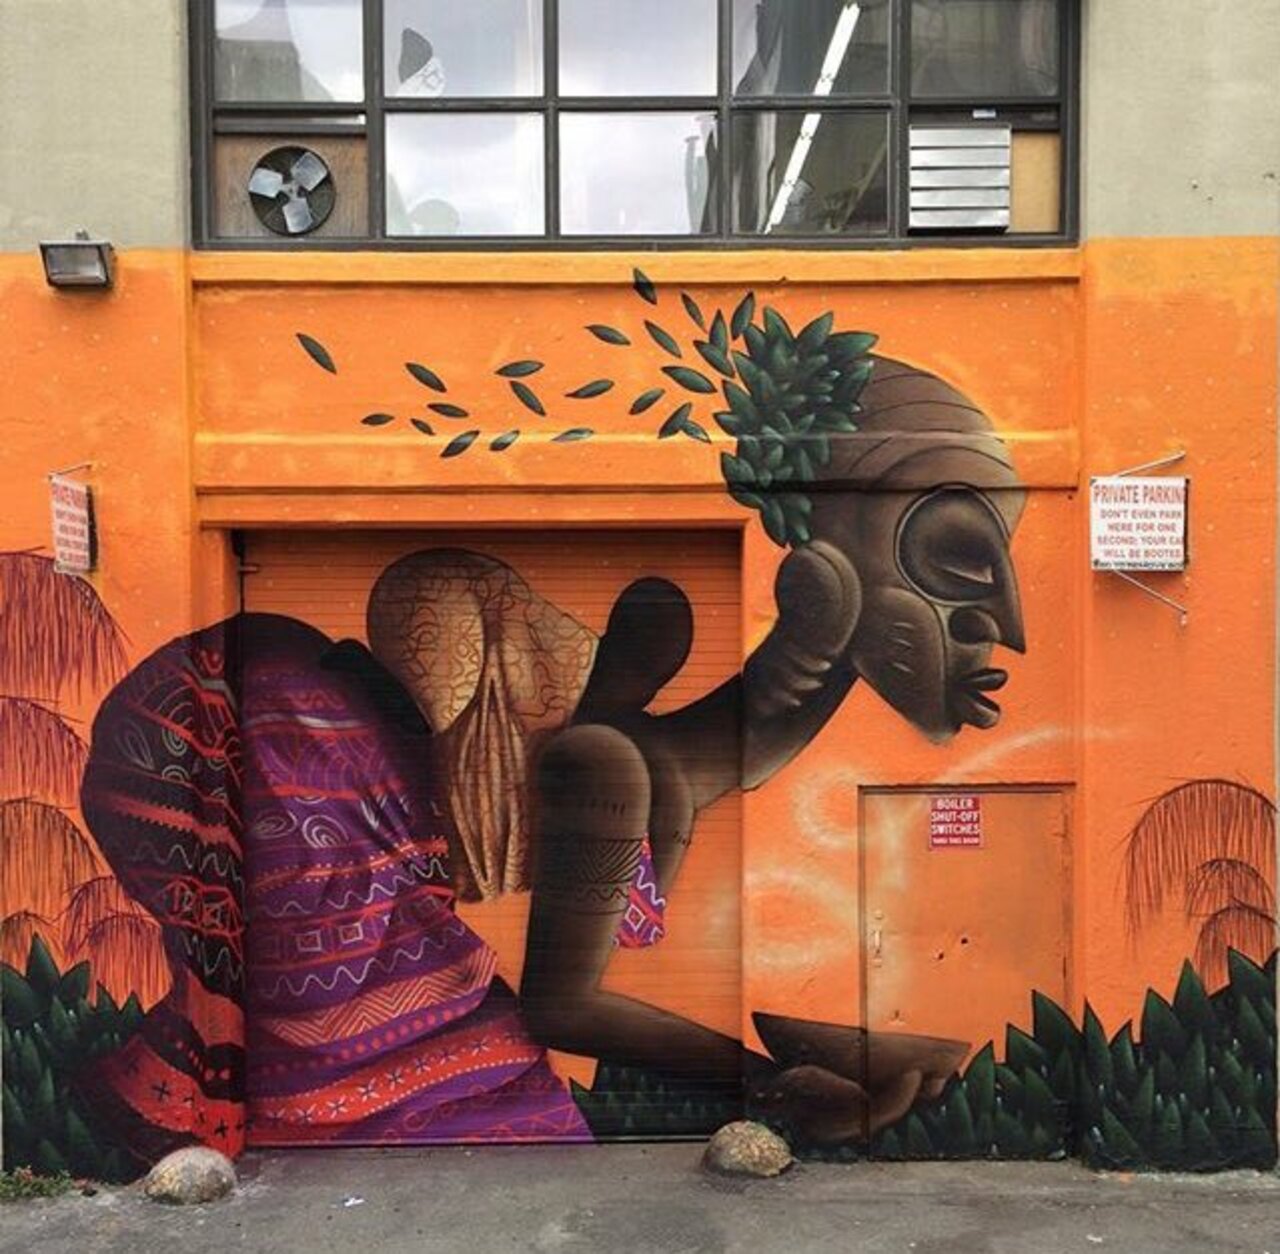 RT @Teledildonic: New Street Art by Alexandre Keto in NYC 

#art #graffiti #mural #streetart https://t.co/LKbcZ1Xb74